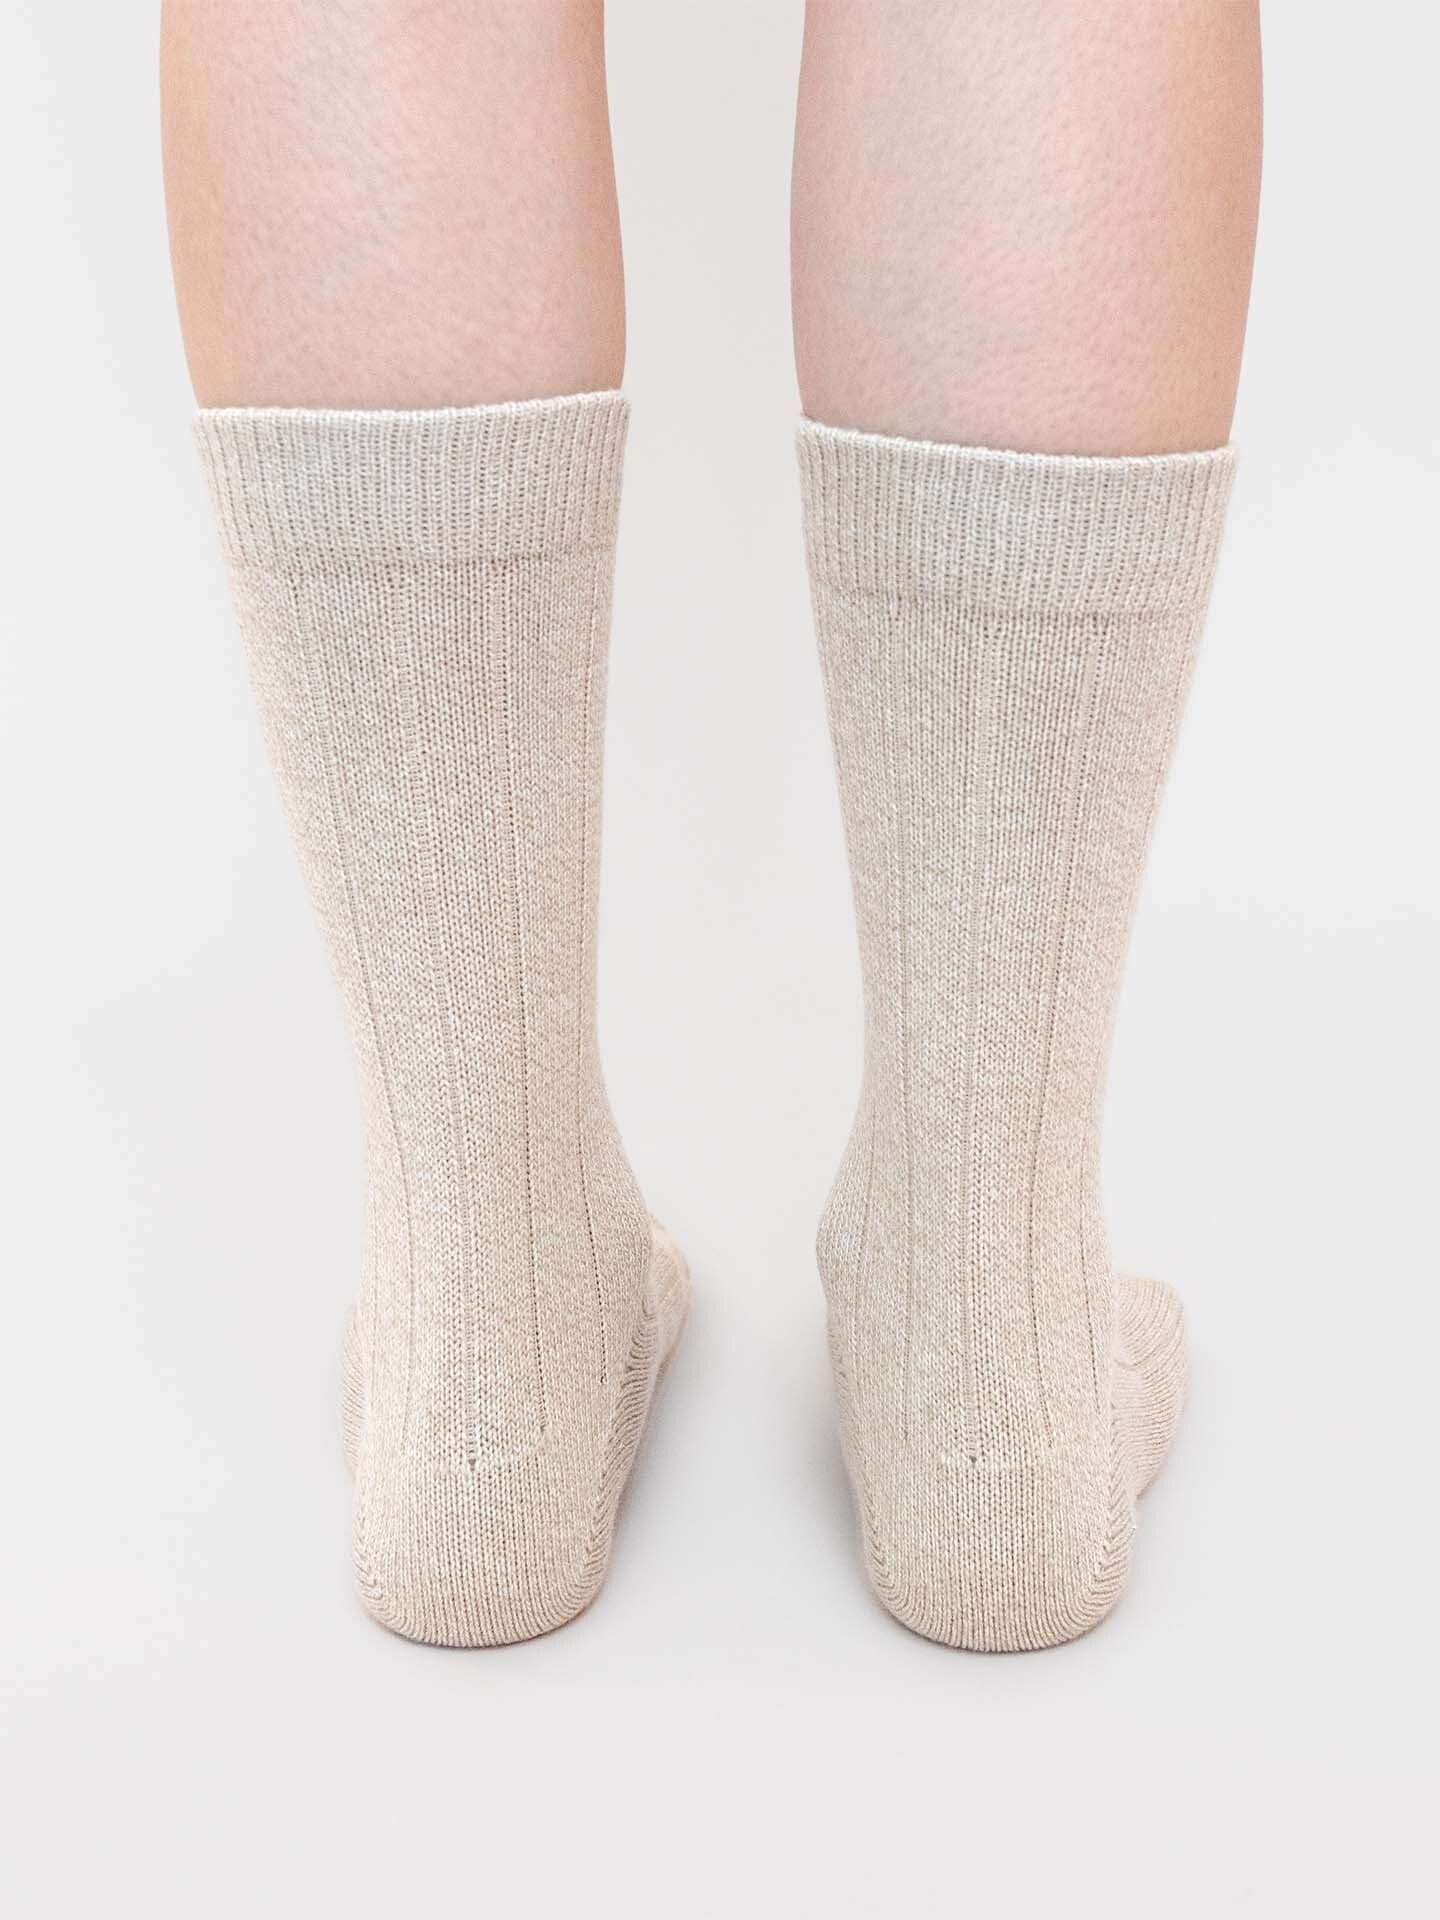 Textil Socken Erlich Astrid (2-Paar) sand